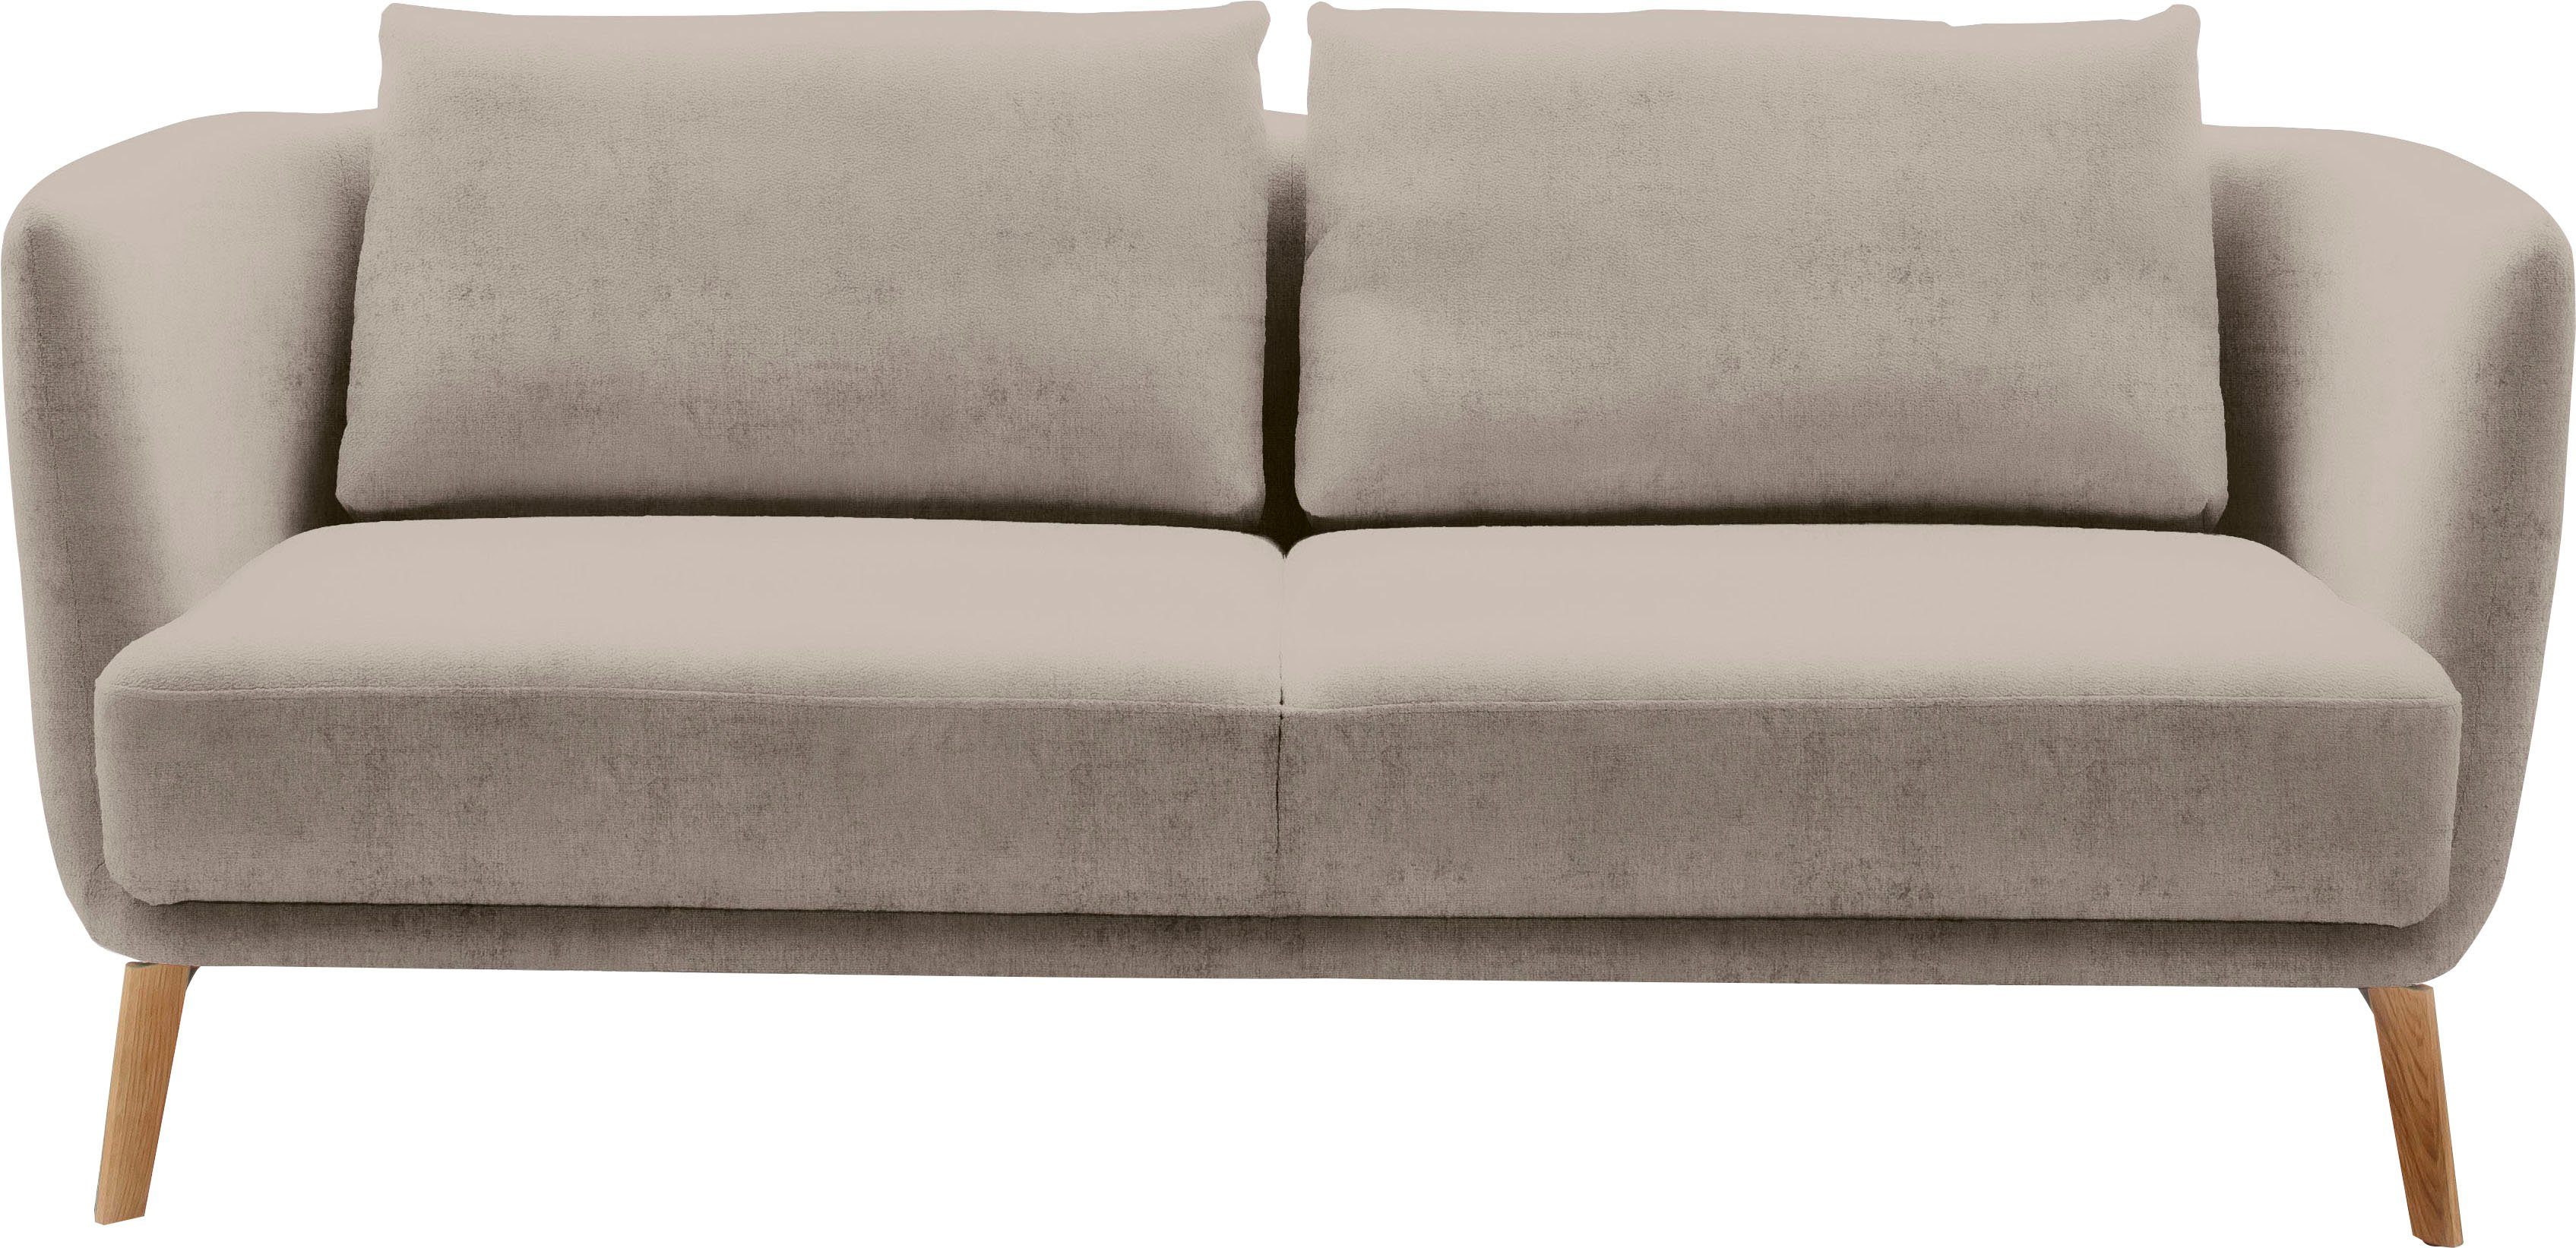 SCHÖNER WOHNEN-Kollektion 2,5-Sitzer Pearl - 5 Jahre Hersteller-Garantie, auch in Bouclé, Maße (B/H/T): 190/71/91 cm, Füße Massivholz